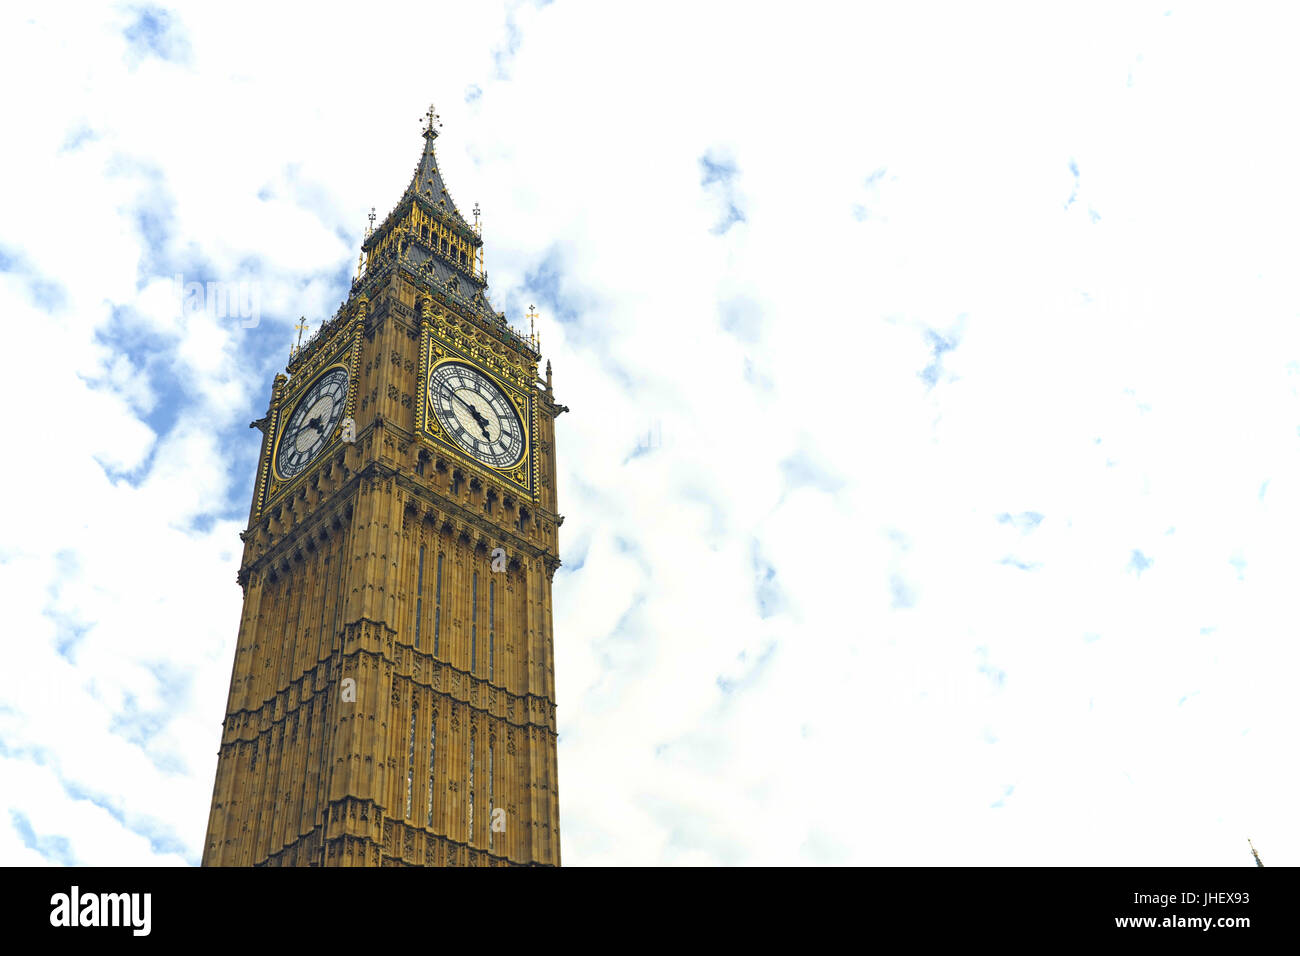 Big Ben, considerato uno dei più celebri strutture di Londra, si staglia contro il cielo molto nuvoloso in serata si avvicina a Londra, Inghilterra, Regno Unito Foto Stock